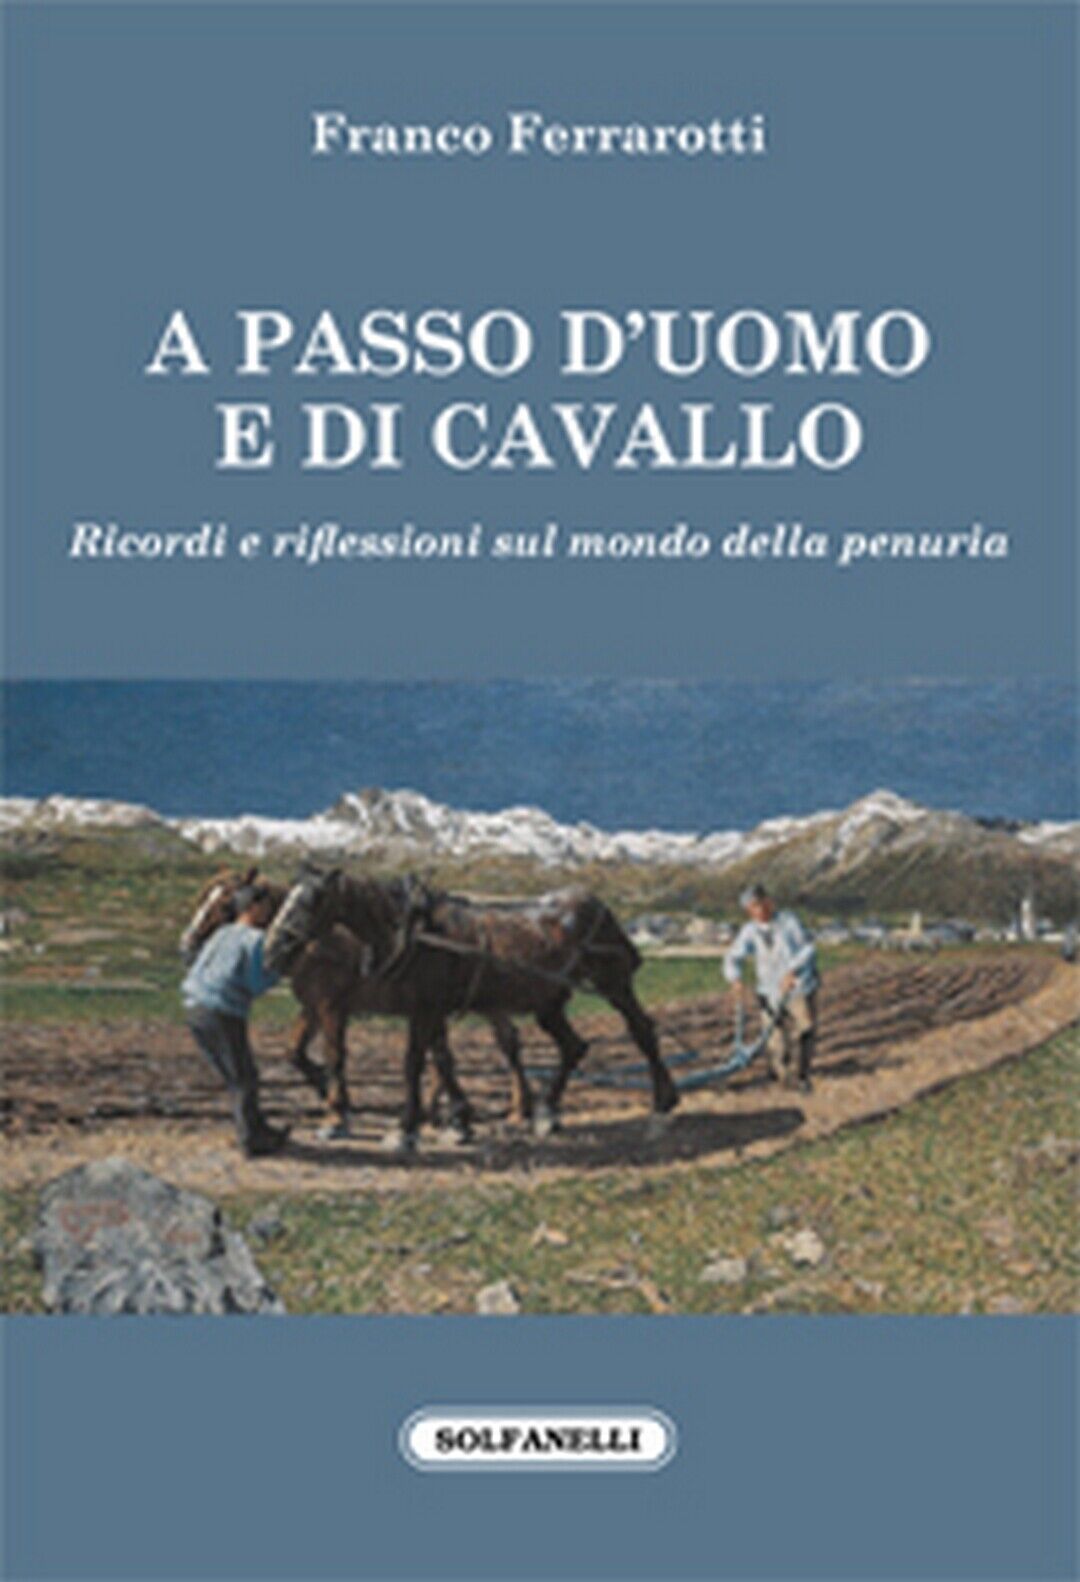 A PASSO d'UOMO E DI CAVALLO  di Franco Ferrarotti,  Solfanelli Edizioni